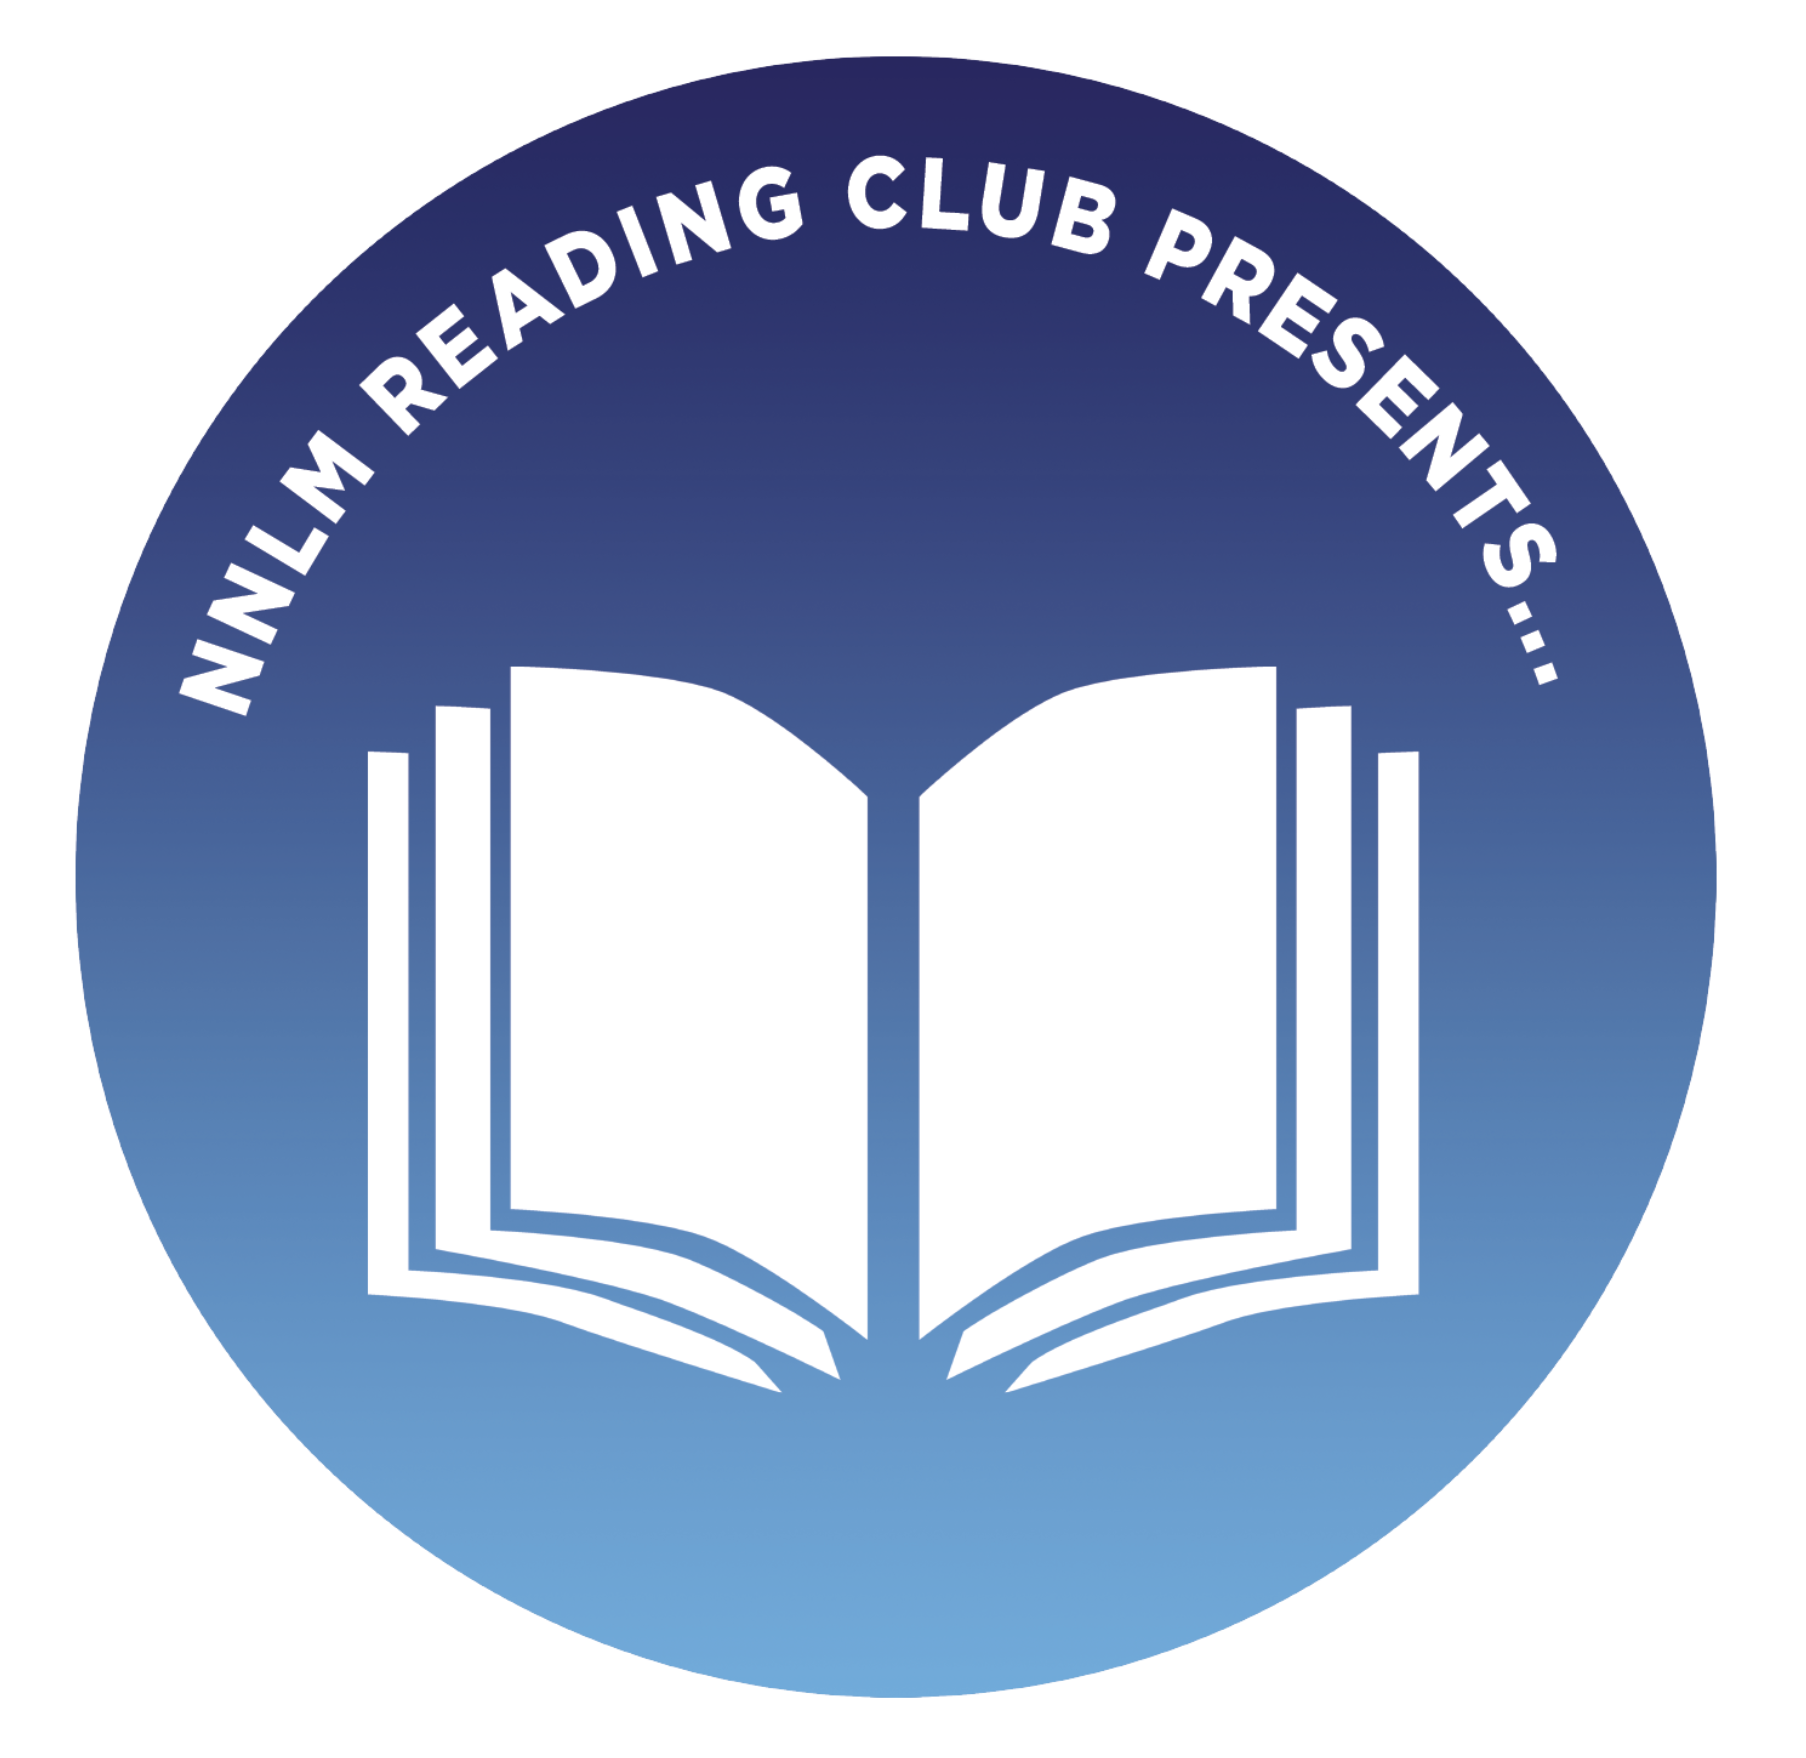 NNLM Reading Club Presents round logo